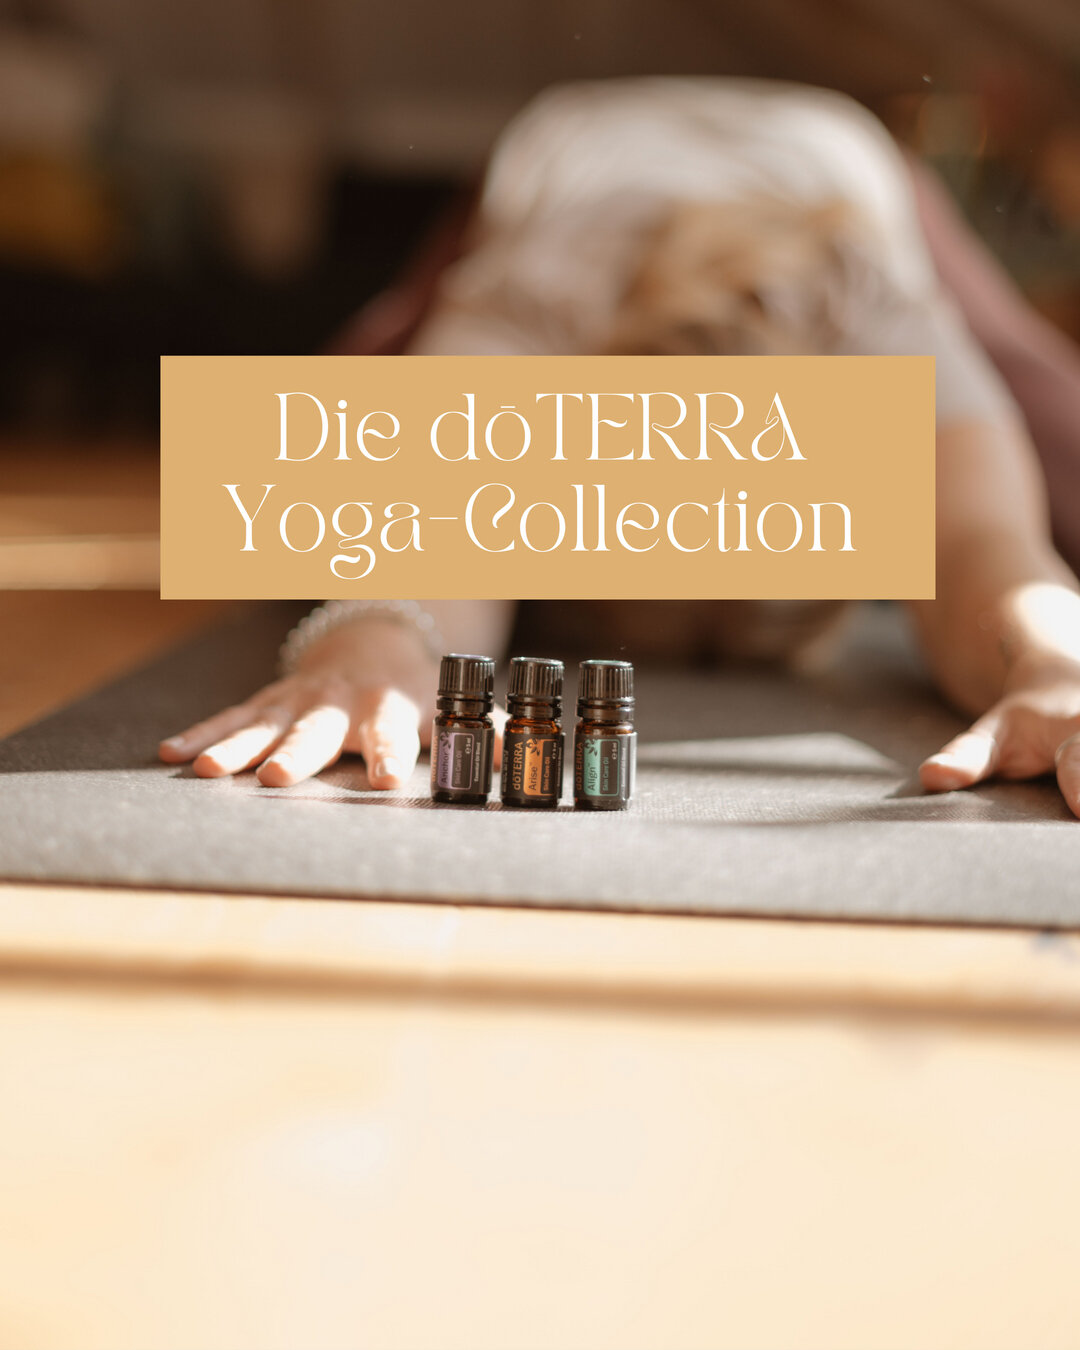 Kennst du die Yoga-Collection von dōTERRA schon? Align&trade;, Arise&trade; &amp; Anchor&trade;, 3 ganz besondere &Ouml;le, die mich sehr oft auf die Matte begleiten.​​​​​​​​​
Jedes dieser &Ouml;le hat eine andere Wirkung auf unser System und kann un